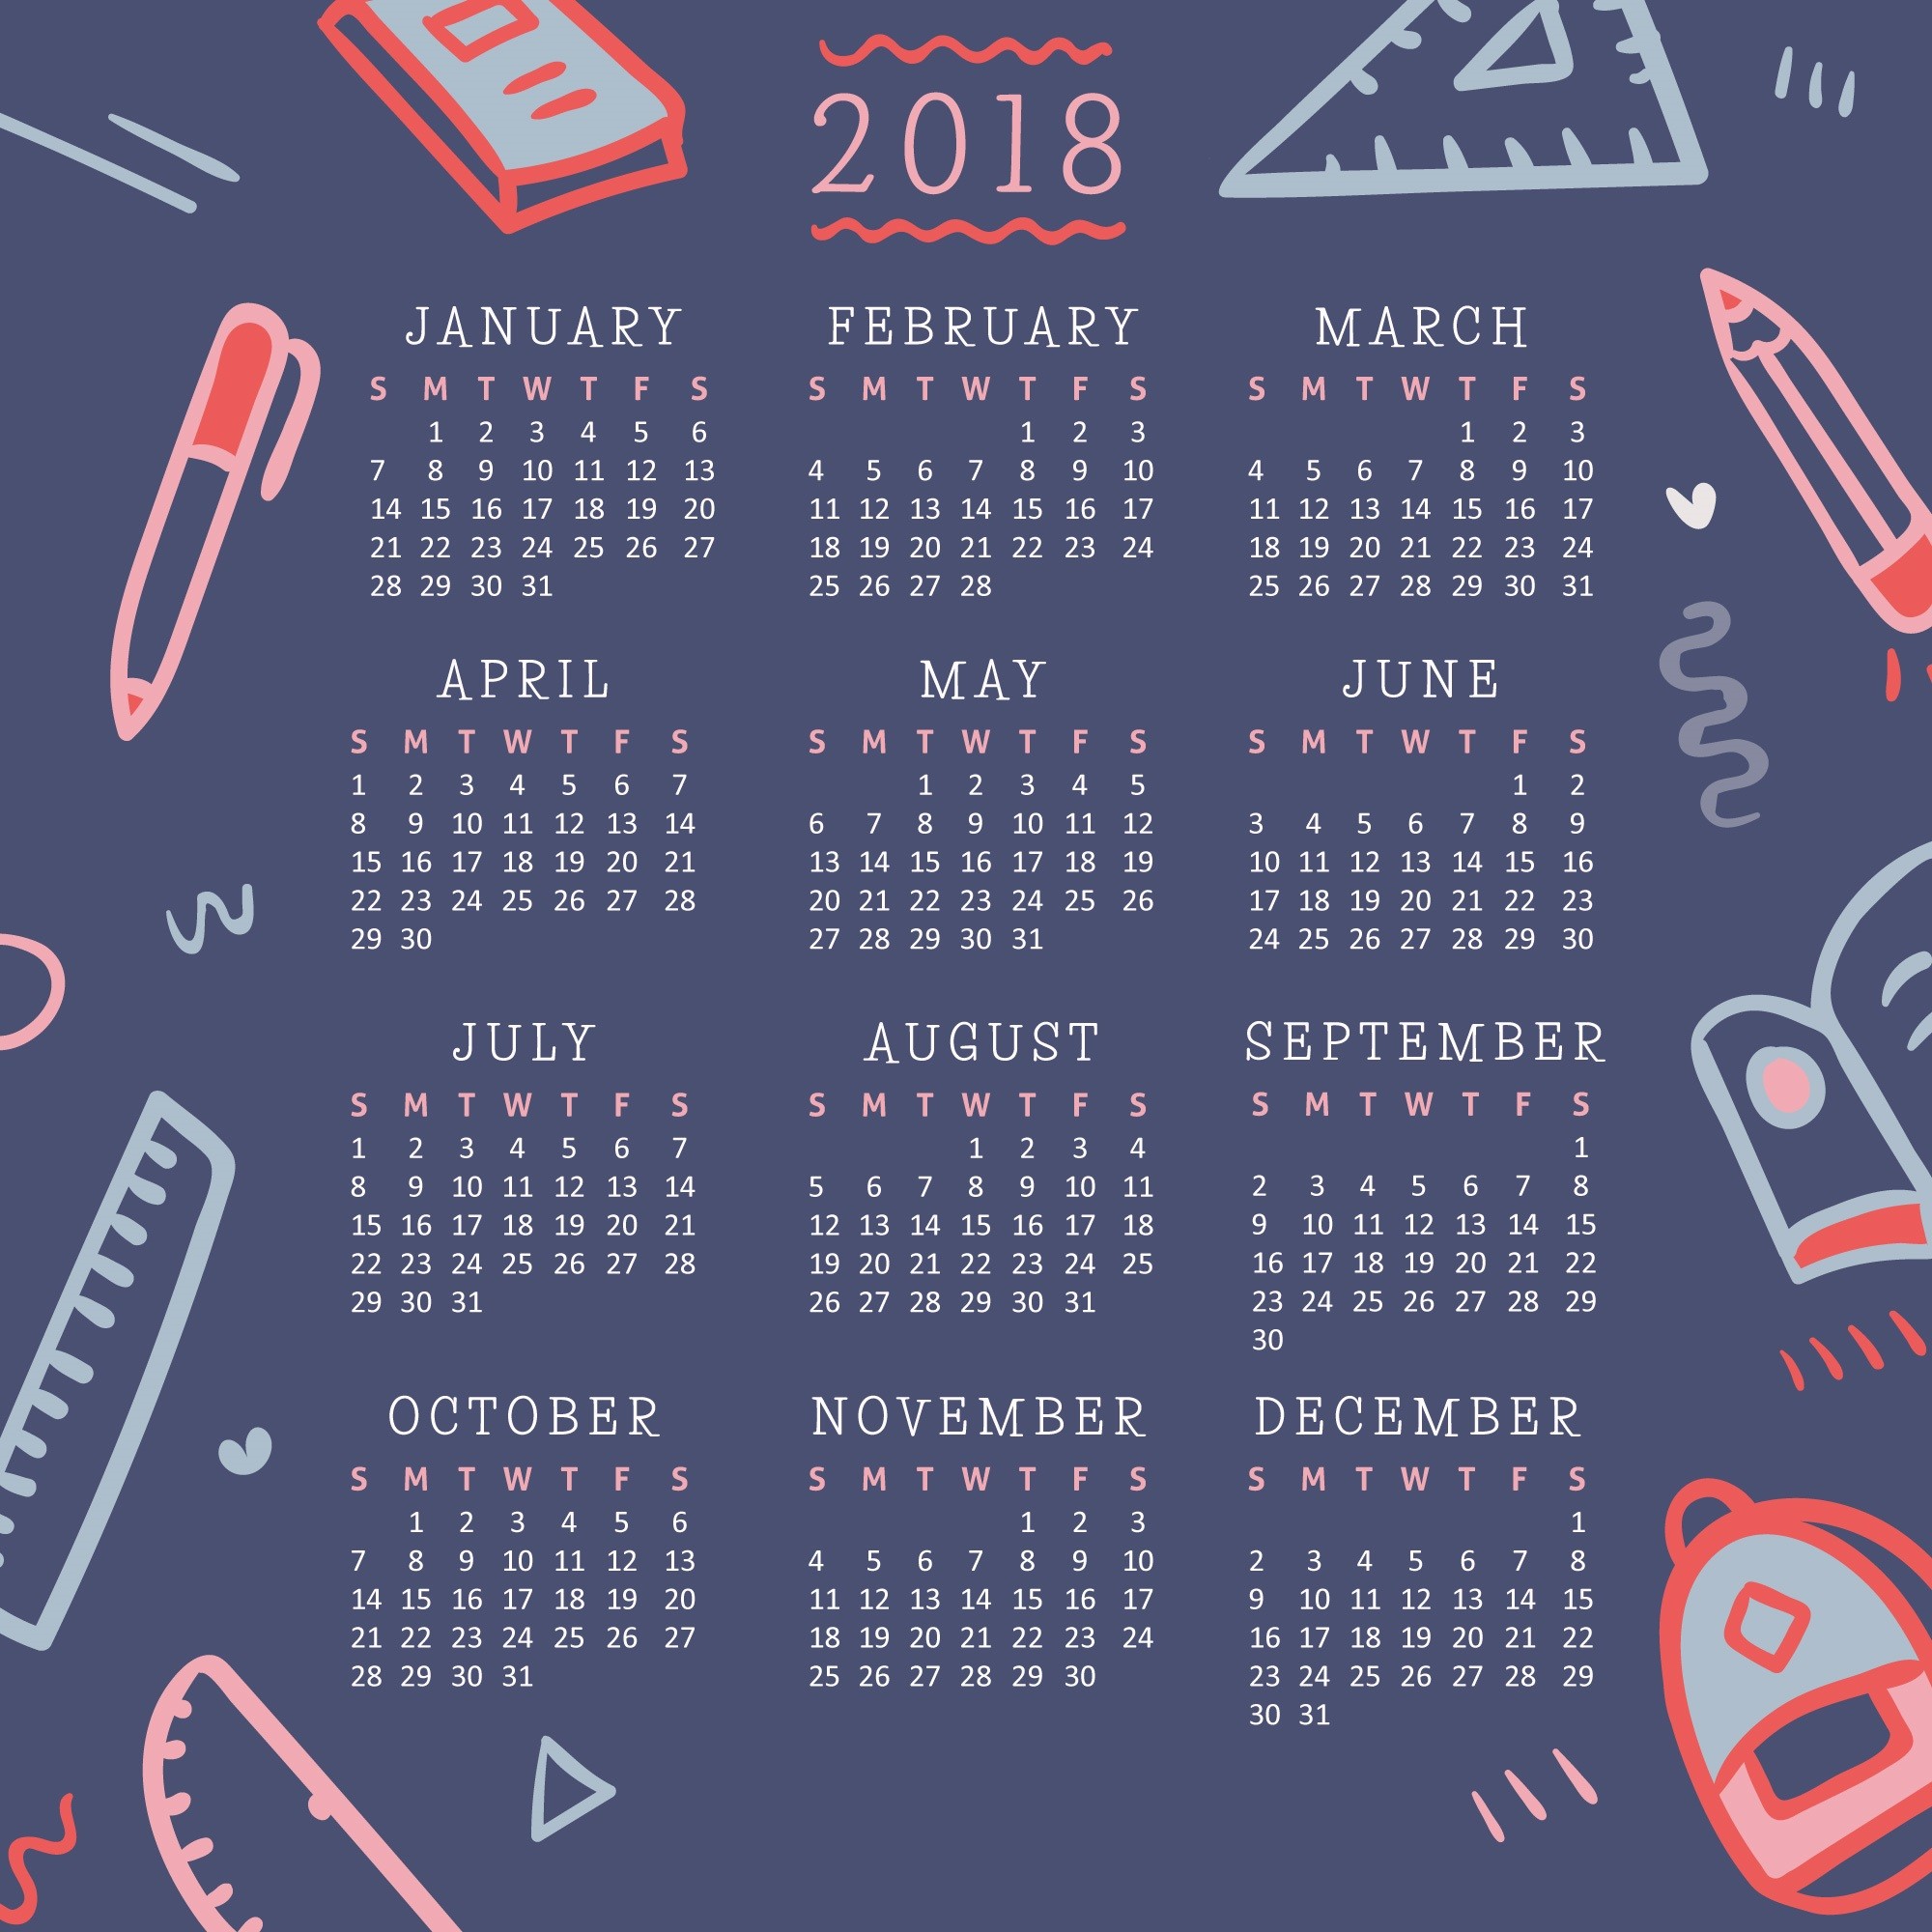 2000x2000 Year calendar wallpaper download calendar jpg  2018 calendar  computer wallpaper free